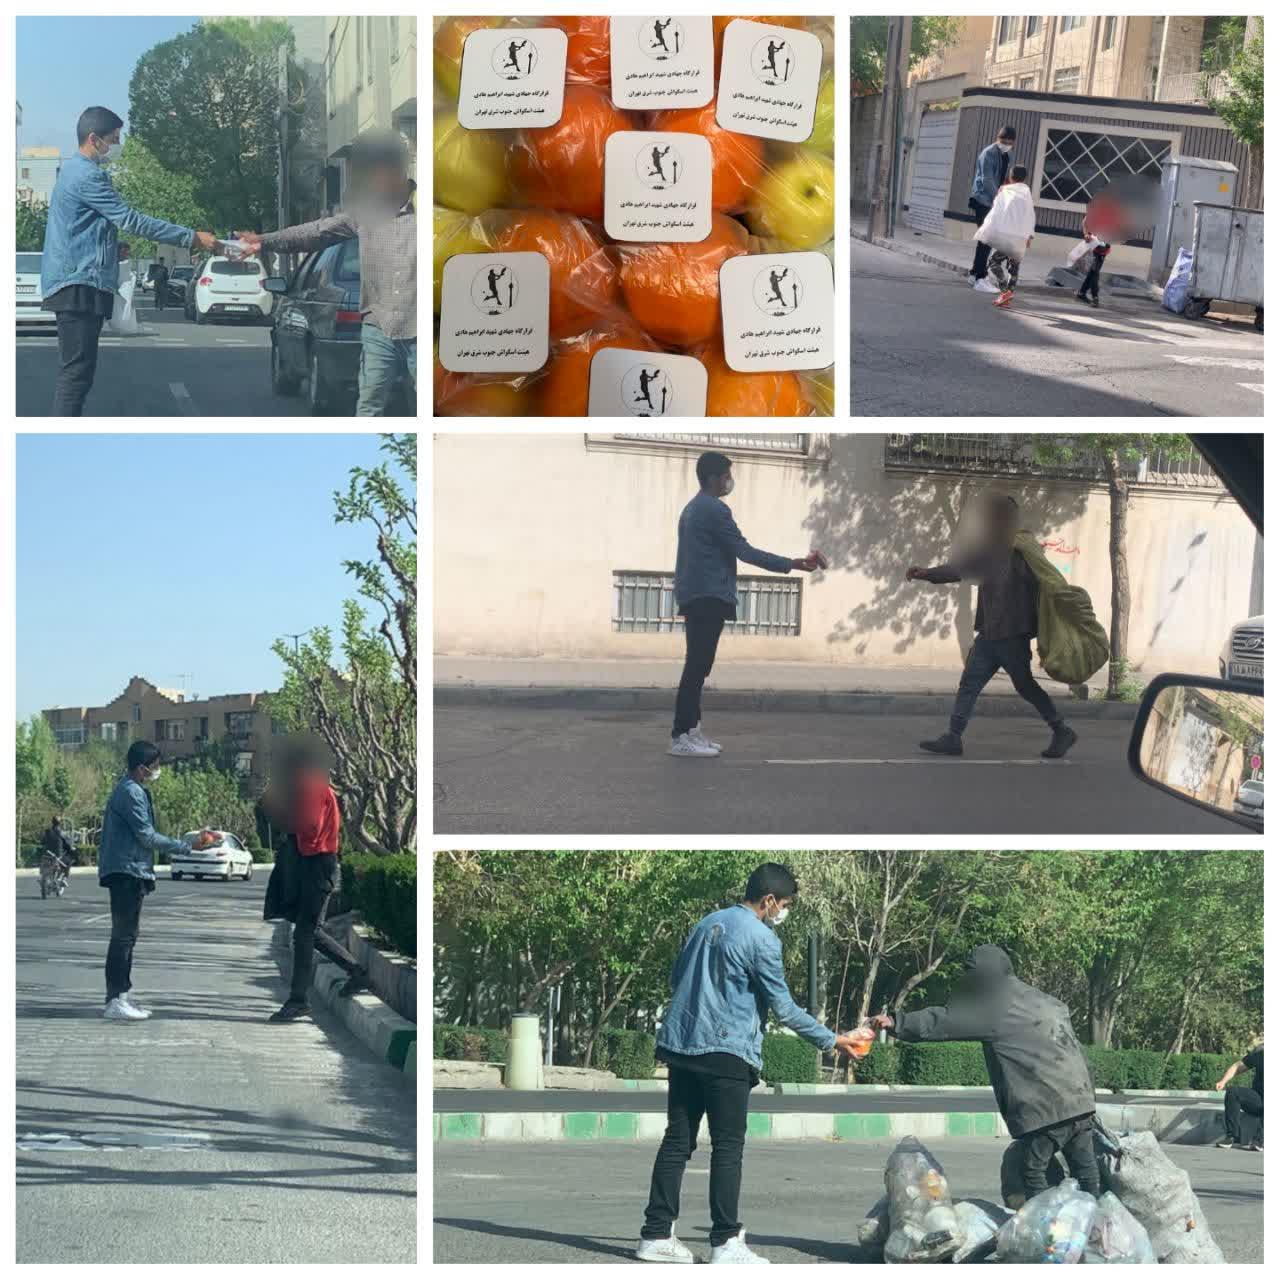 اهدای پک های میوه به افراد کم برخوردار توسط هیئت اسکواش جنوب شرق تهران